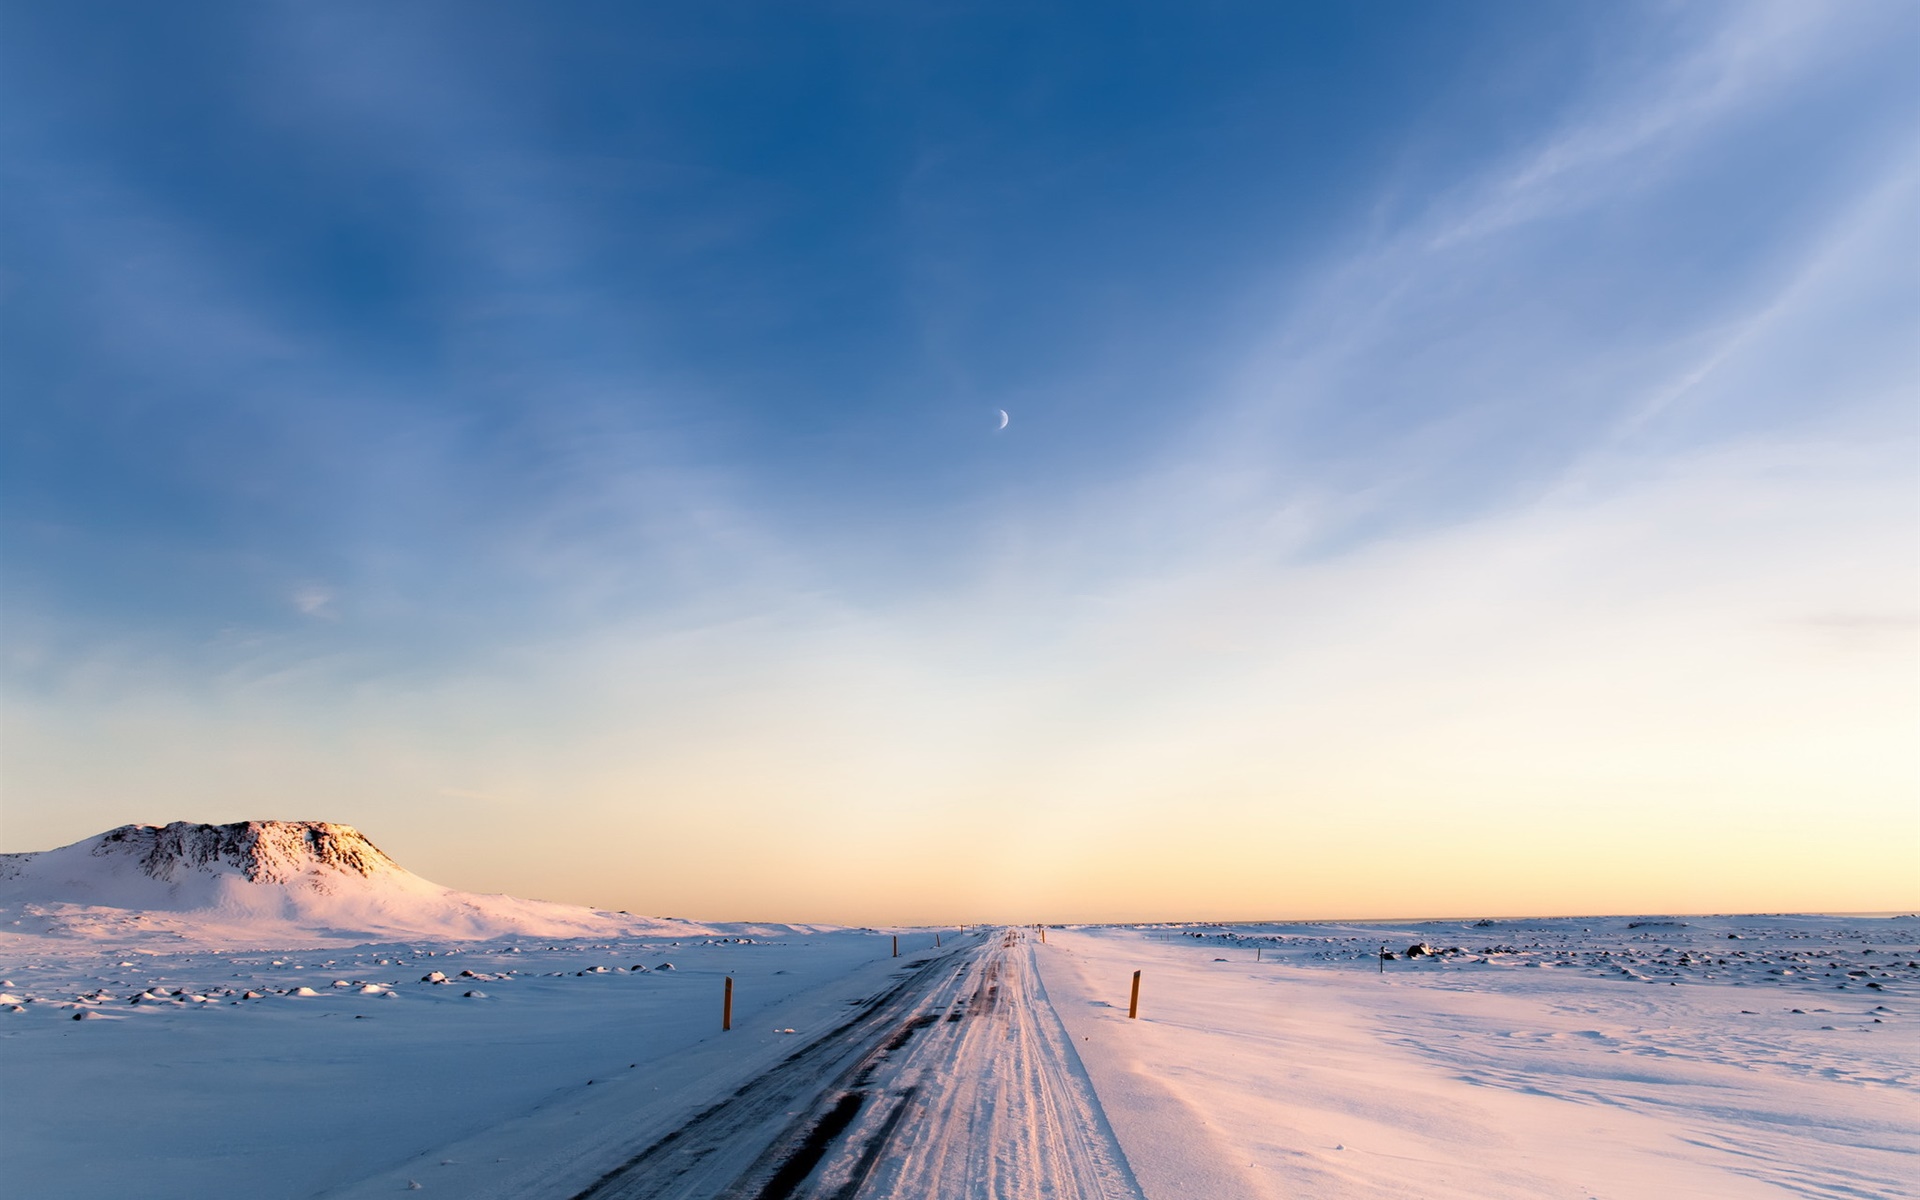 冰岛 冬季 雪 道路 早晨 天空桌面壁纸 1920x1200 壁纸下载 Cn Hdwall365 Com